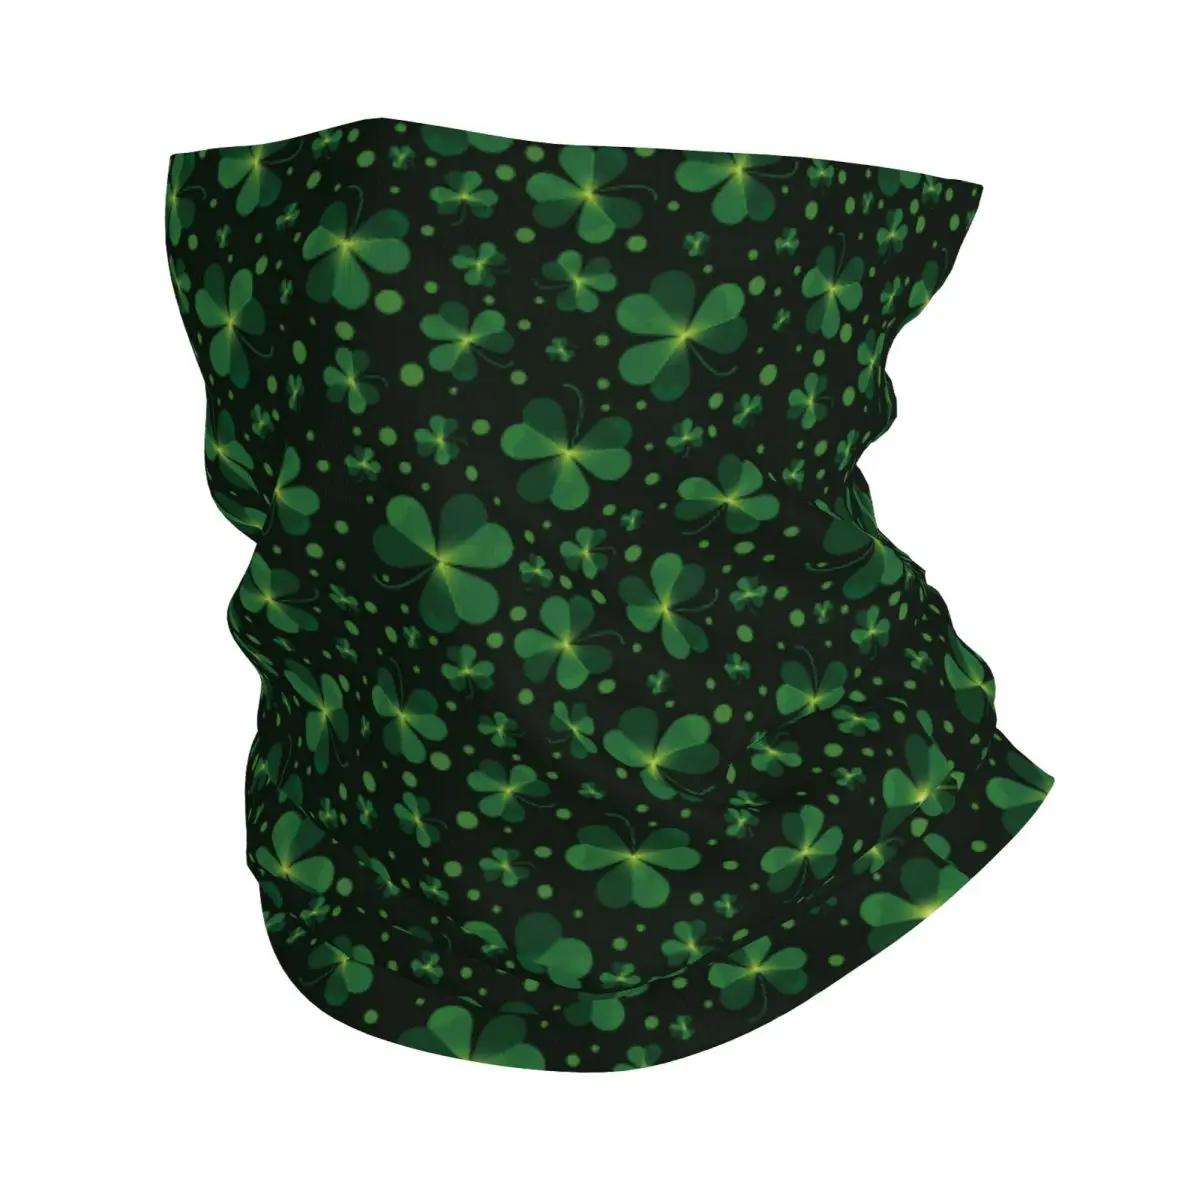 

Бандана Shamrock с принтом листьев зеленая, шейный платок, Балаклава, маска-шарф, многофункциональная повязка на голову для рыбалки для мужчин и женщин, для взрослых, Всесезонная